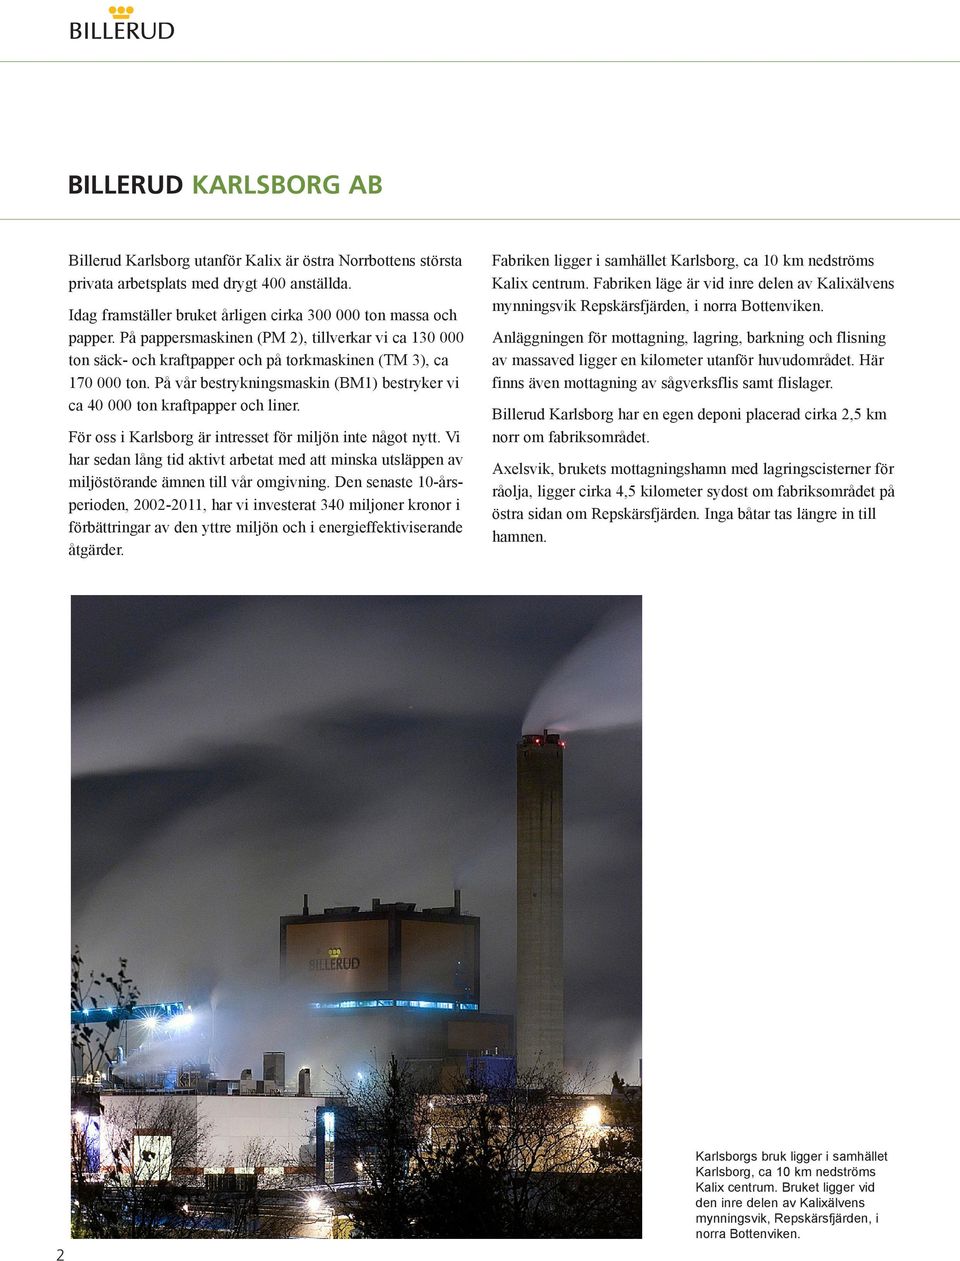 På vår bestrykningsmaskin (BM1) bestryker vi ca 40 000 ton kraftpapper och liner. För oss i Karlsborg är intresset för miljön inte något nytt.